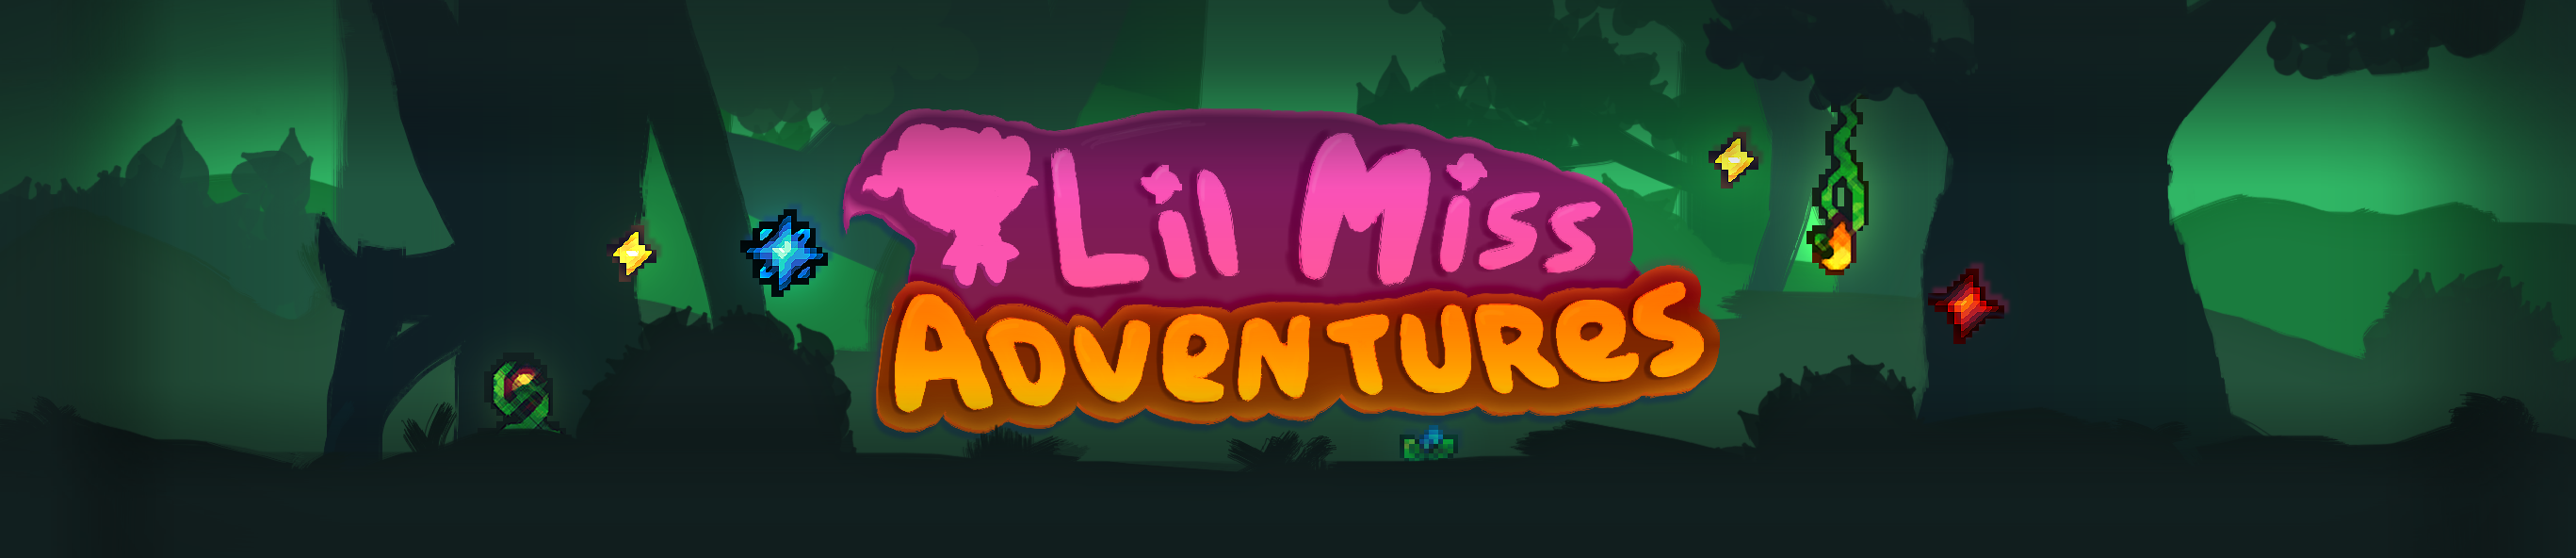 Lil Miss Adventures Demo v4.5